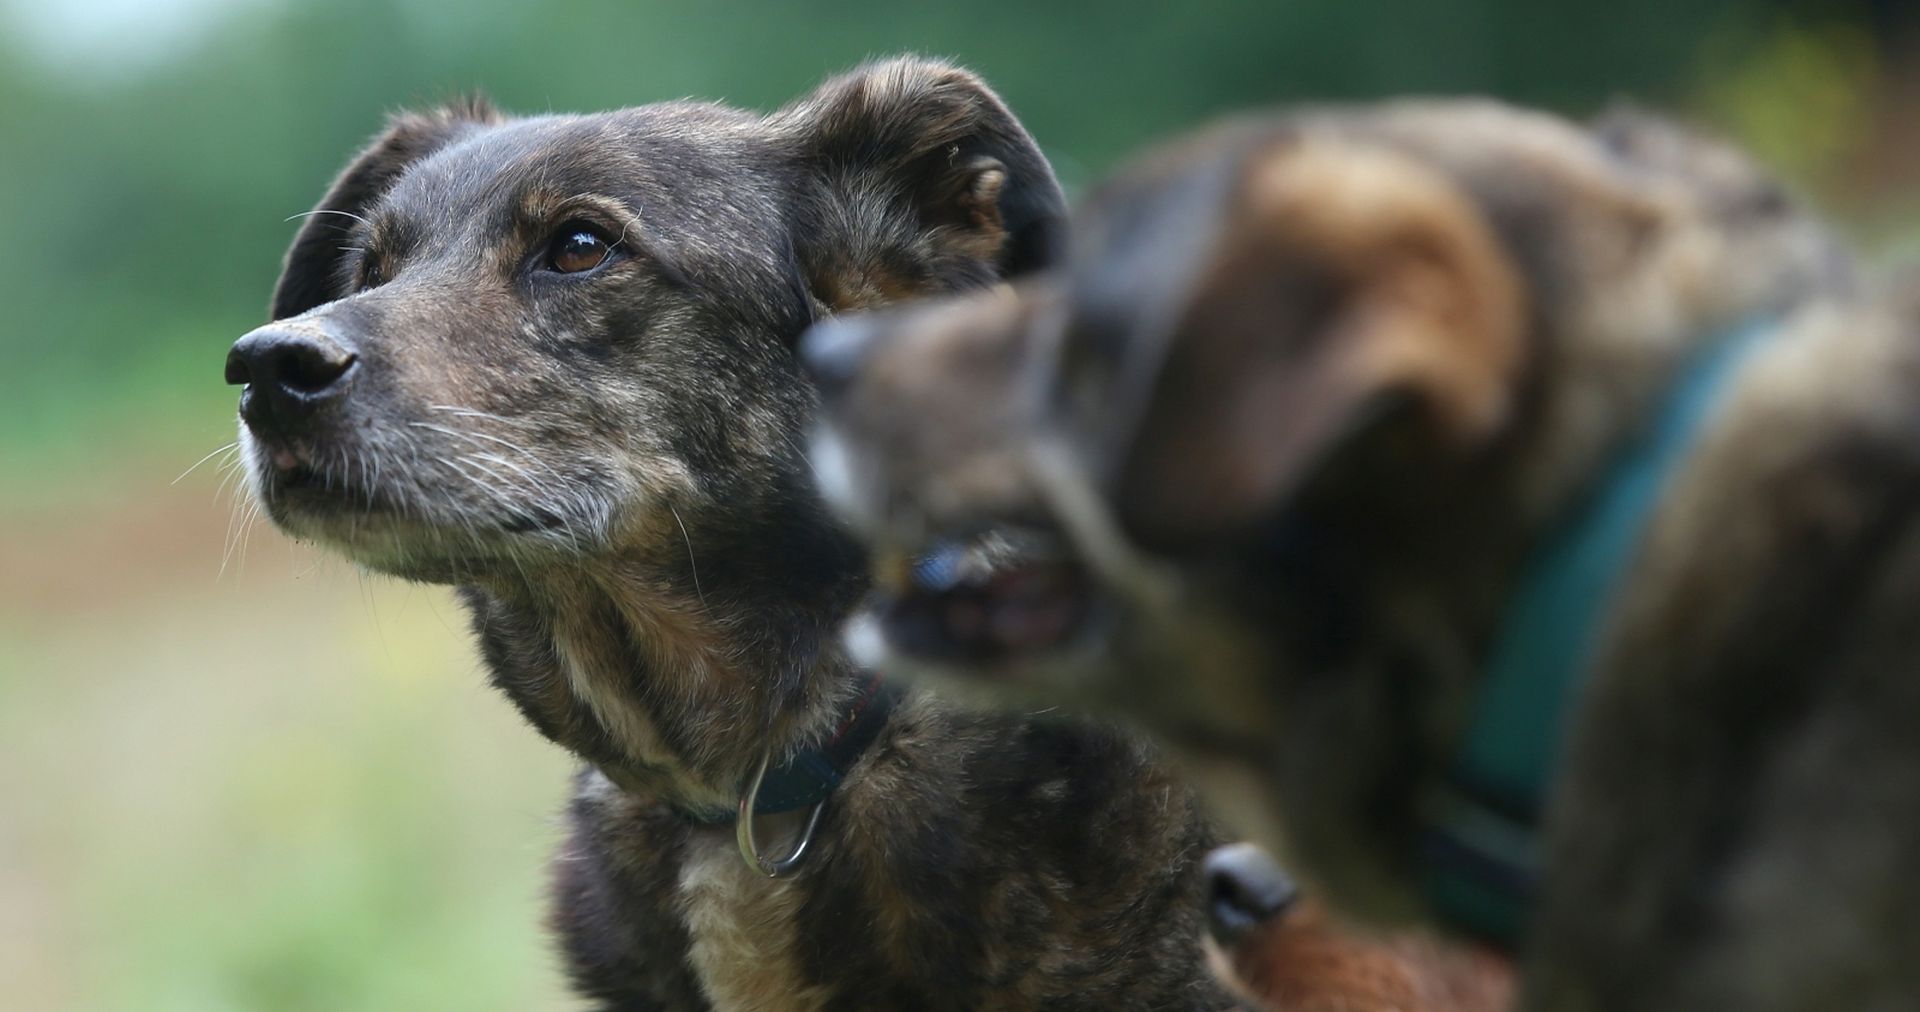 03.07.2016., Samobor - Maja Sertic udomila je dva psa koja su provela 14 godina u sklonistu za nezbrinute zivotinje Dumovec.
Photo: Igor Kralj/PIXSELL